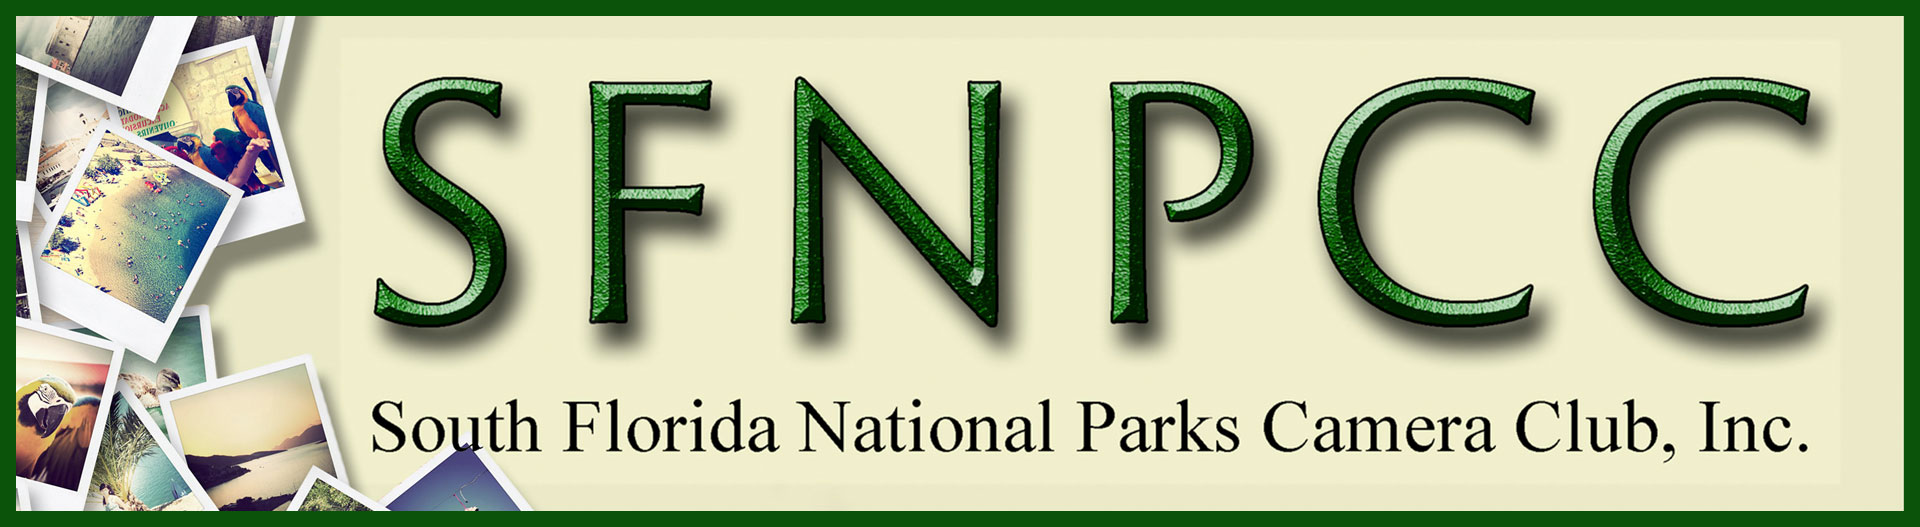 South Florida National Parks Camera Club, Inc. Affiliate - Slider Image